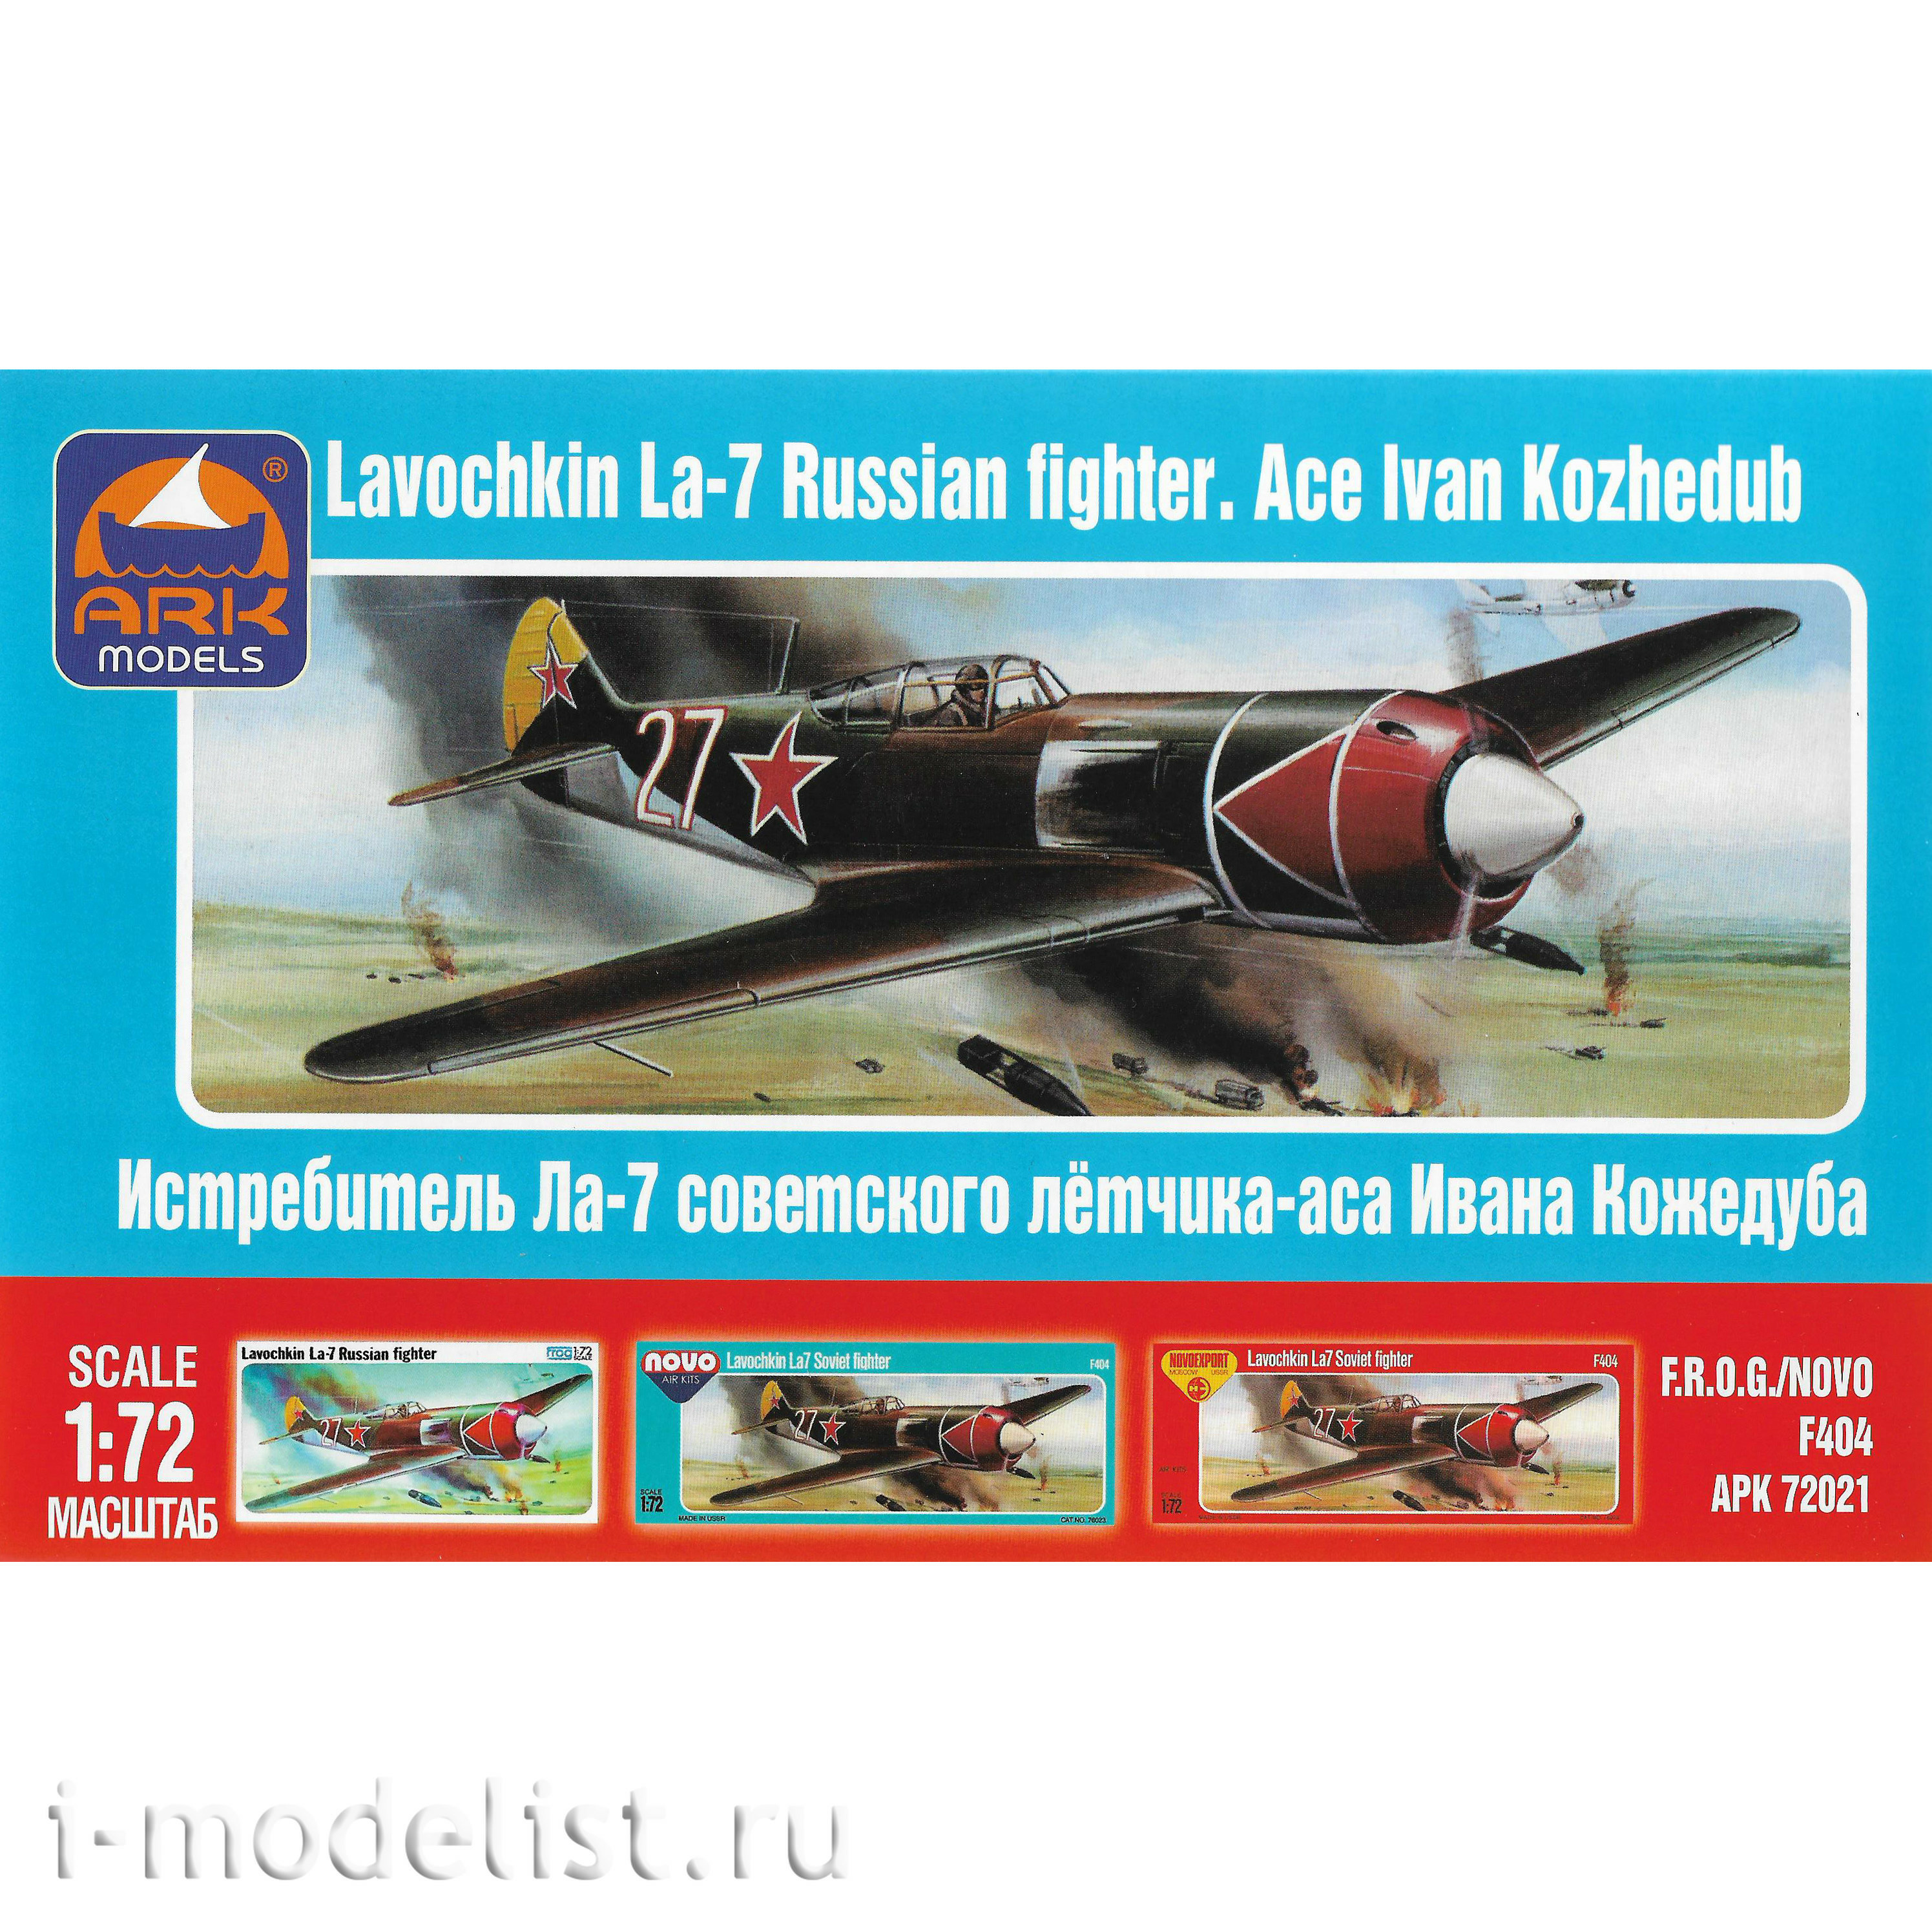 72021 ARK-models 1/72 Soviet fighter Lavochkin La-7